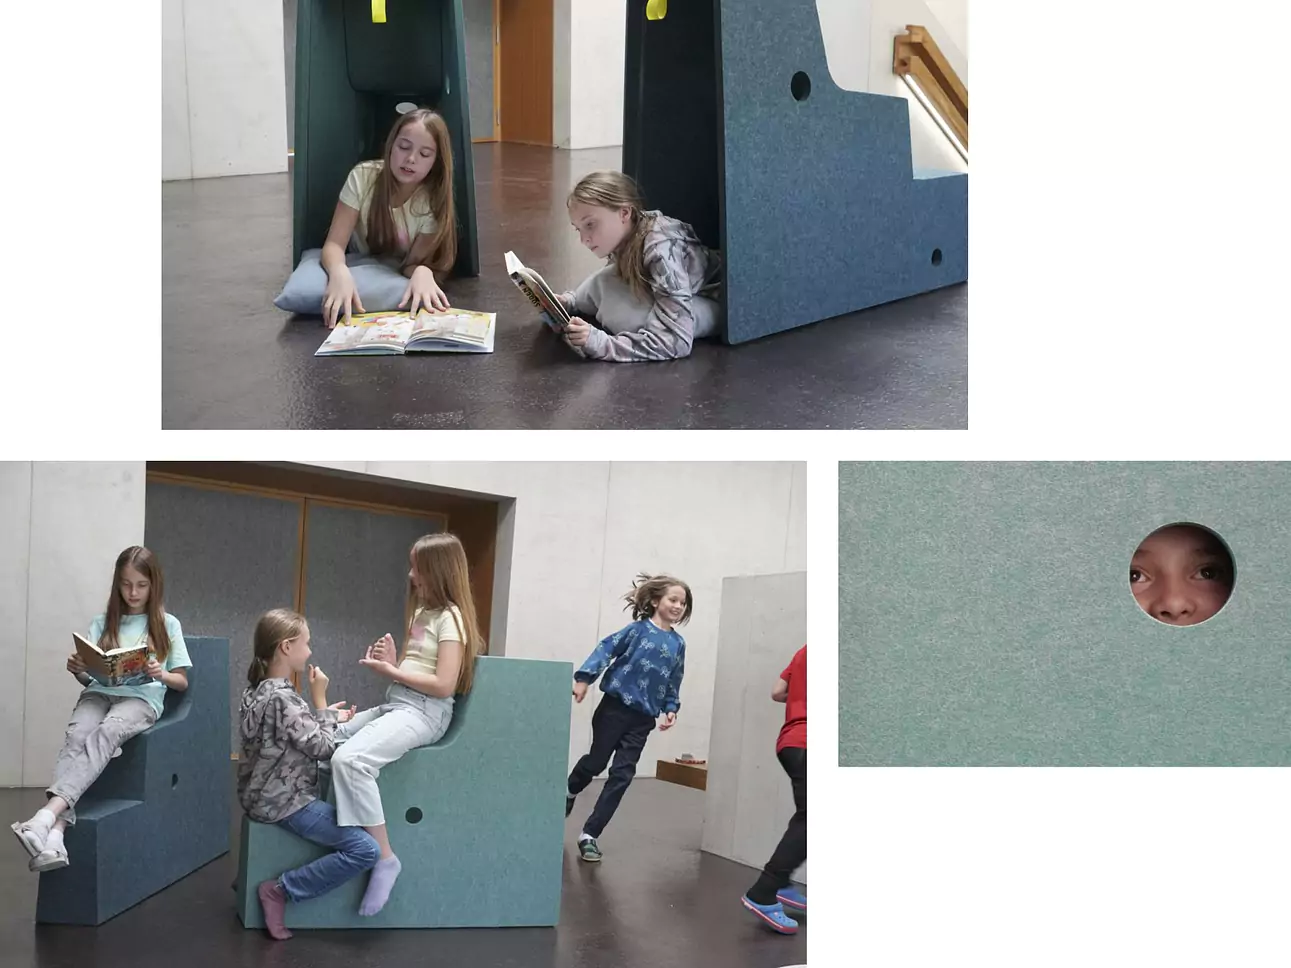 piazza | Das innovative Schulmöbel für kooperatives Lernen